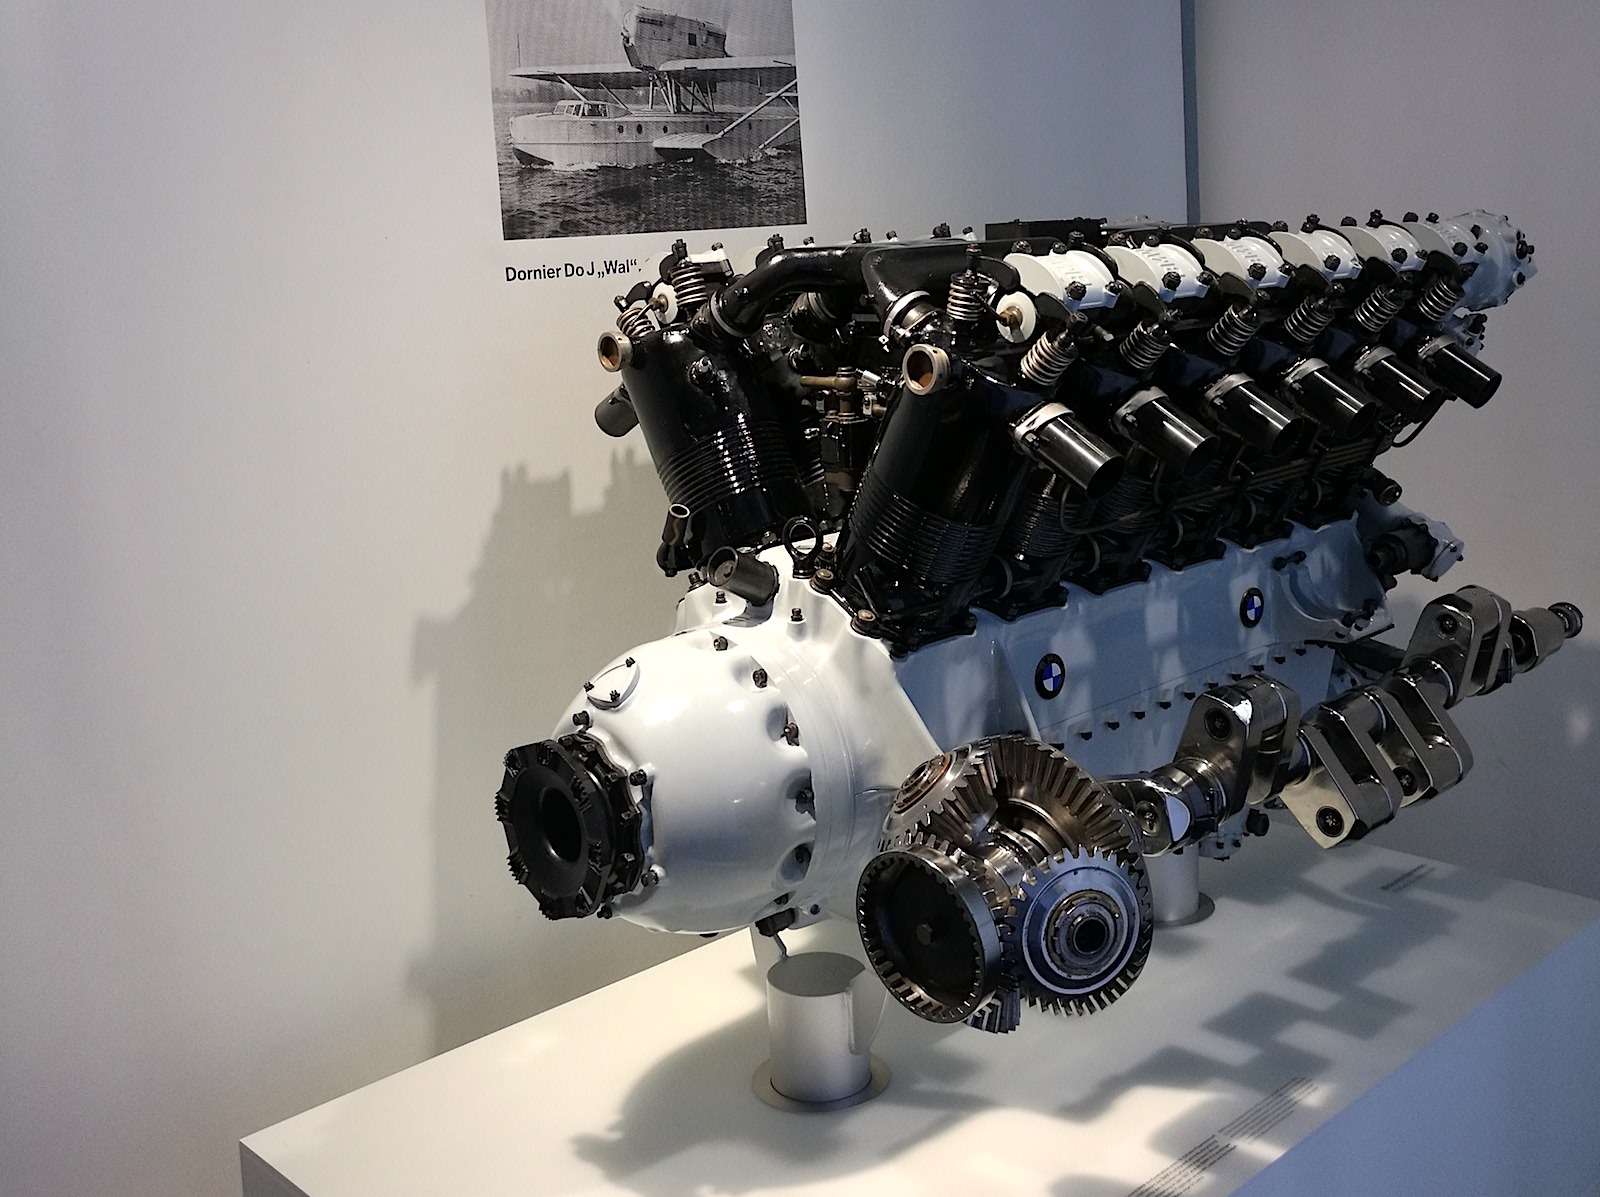 Авиационный двигатель BMW VI стал в начале 1920-х первым 12-цилиндровым двигателем BMW. Его объем 46,9 л, мощность — 700 л.с. Надо ли говорить, что он сыграл важную роль в развитии гражданской авиации Германии. При малом расходе топлива он развивал большую мощность и был достаточно надежным. Именно этот мотор был установлен на гидросамолете с открытой кабиной, на котором в августе 1930 года пилот Вольфганг фон Гронау совершил трансатлантический перелет из Варнемюнде в Нью-Йорк.